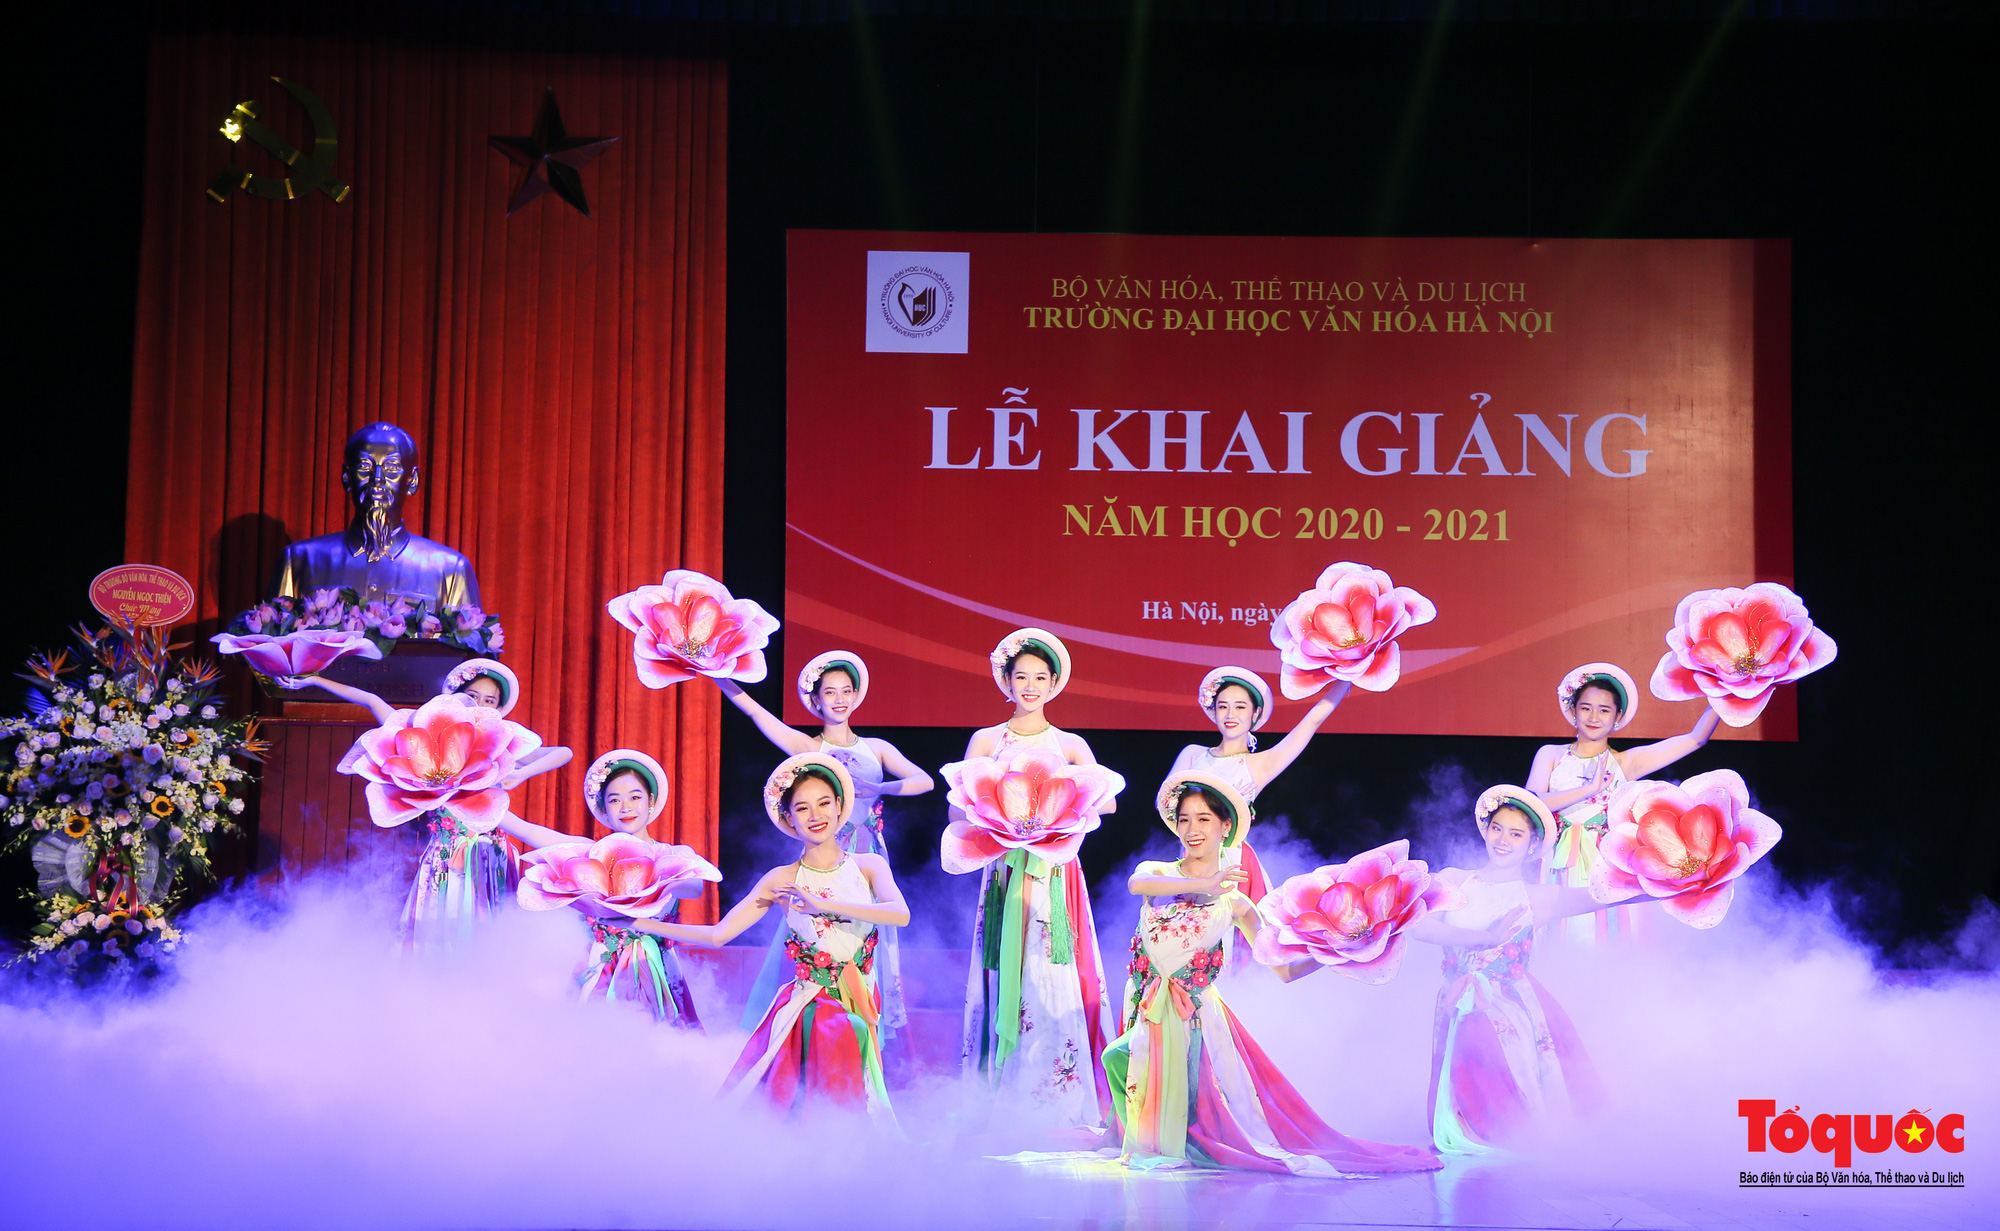 Đại học Văn hóa Hà Nội tiếp tục khẳng định là nơi đào tạo cán bộ văn hoá lớn nhất cả nước - Ảnh 14.